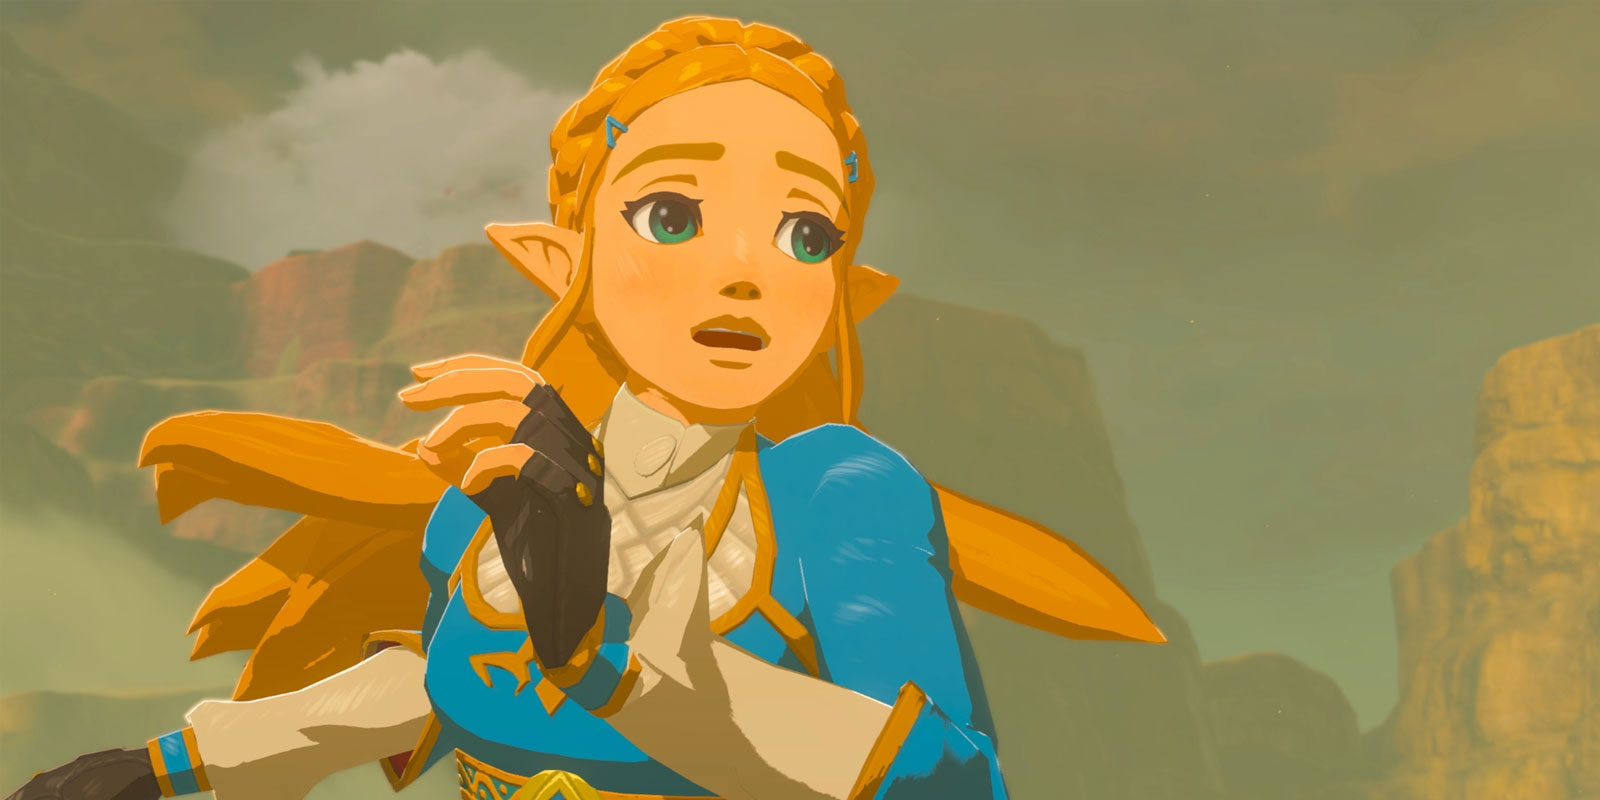 Avance: La princesa Zelda de 'Breath of the Wild' será inteligente y decidida